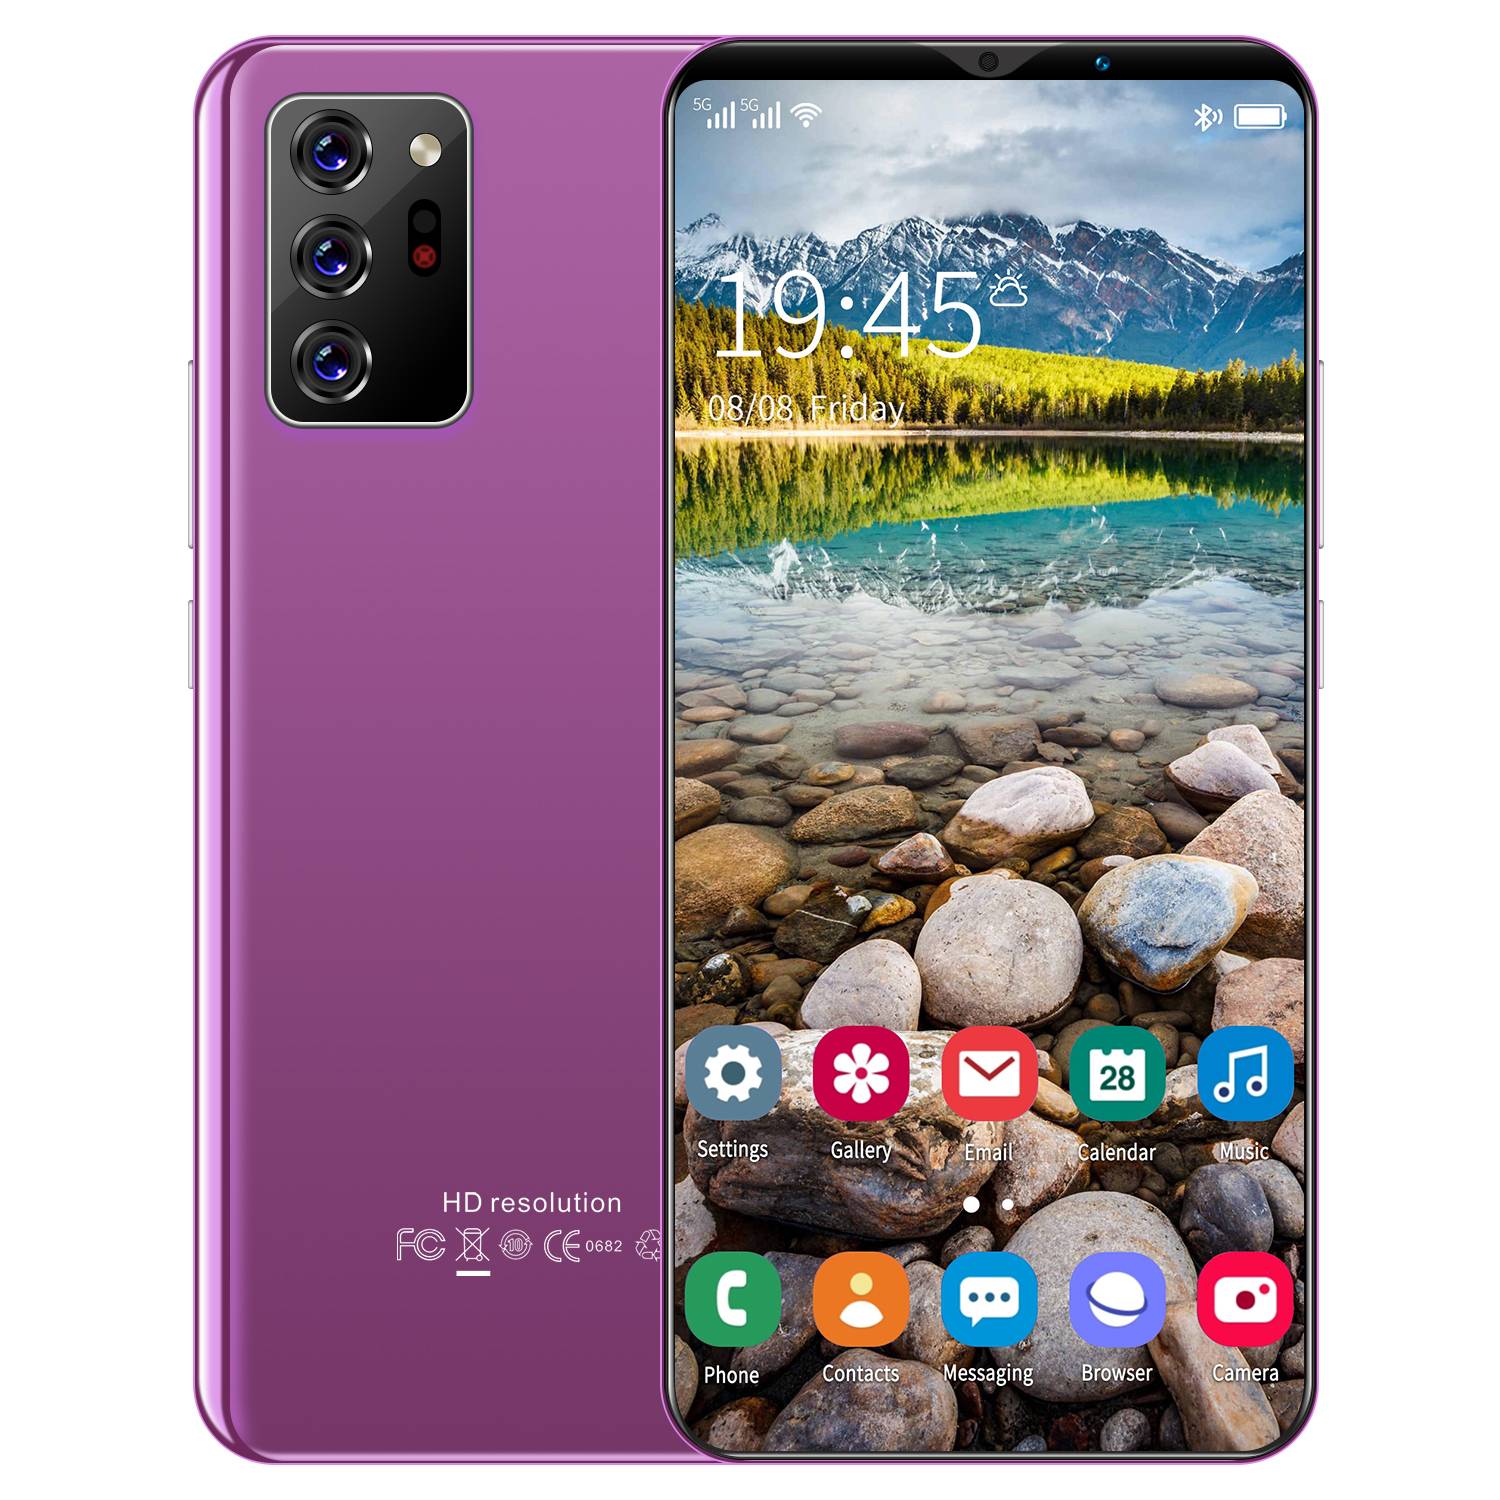 [HP Terbaru 2021 + COD + Pengiriman Gratis] (Penjualan Panas) Note30 Plus 6.1 Inch Smartphone Android Kapasitas Besar RAM6GB ROM128GB Android 10 Ponsel Smartphone Pengisian Cepat Ponsel Promosi Ponsel Murah